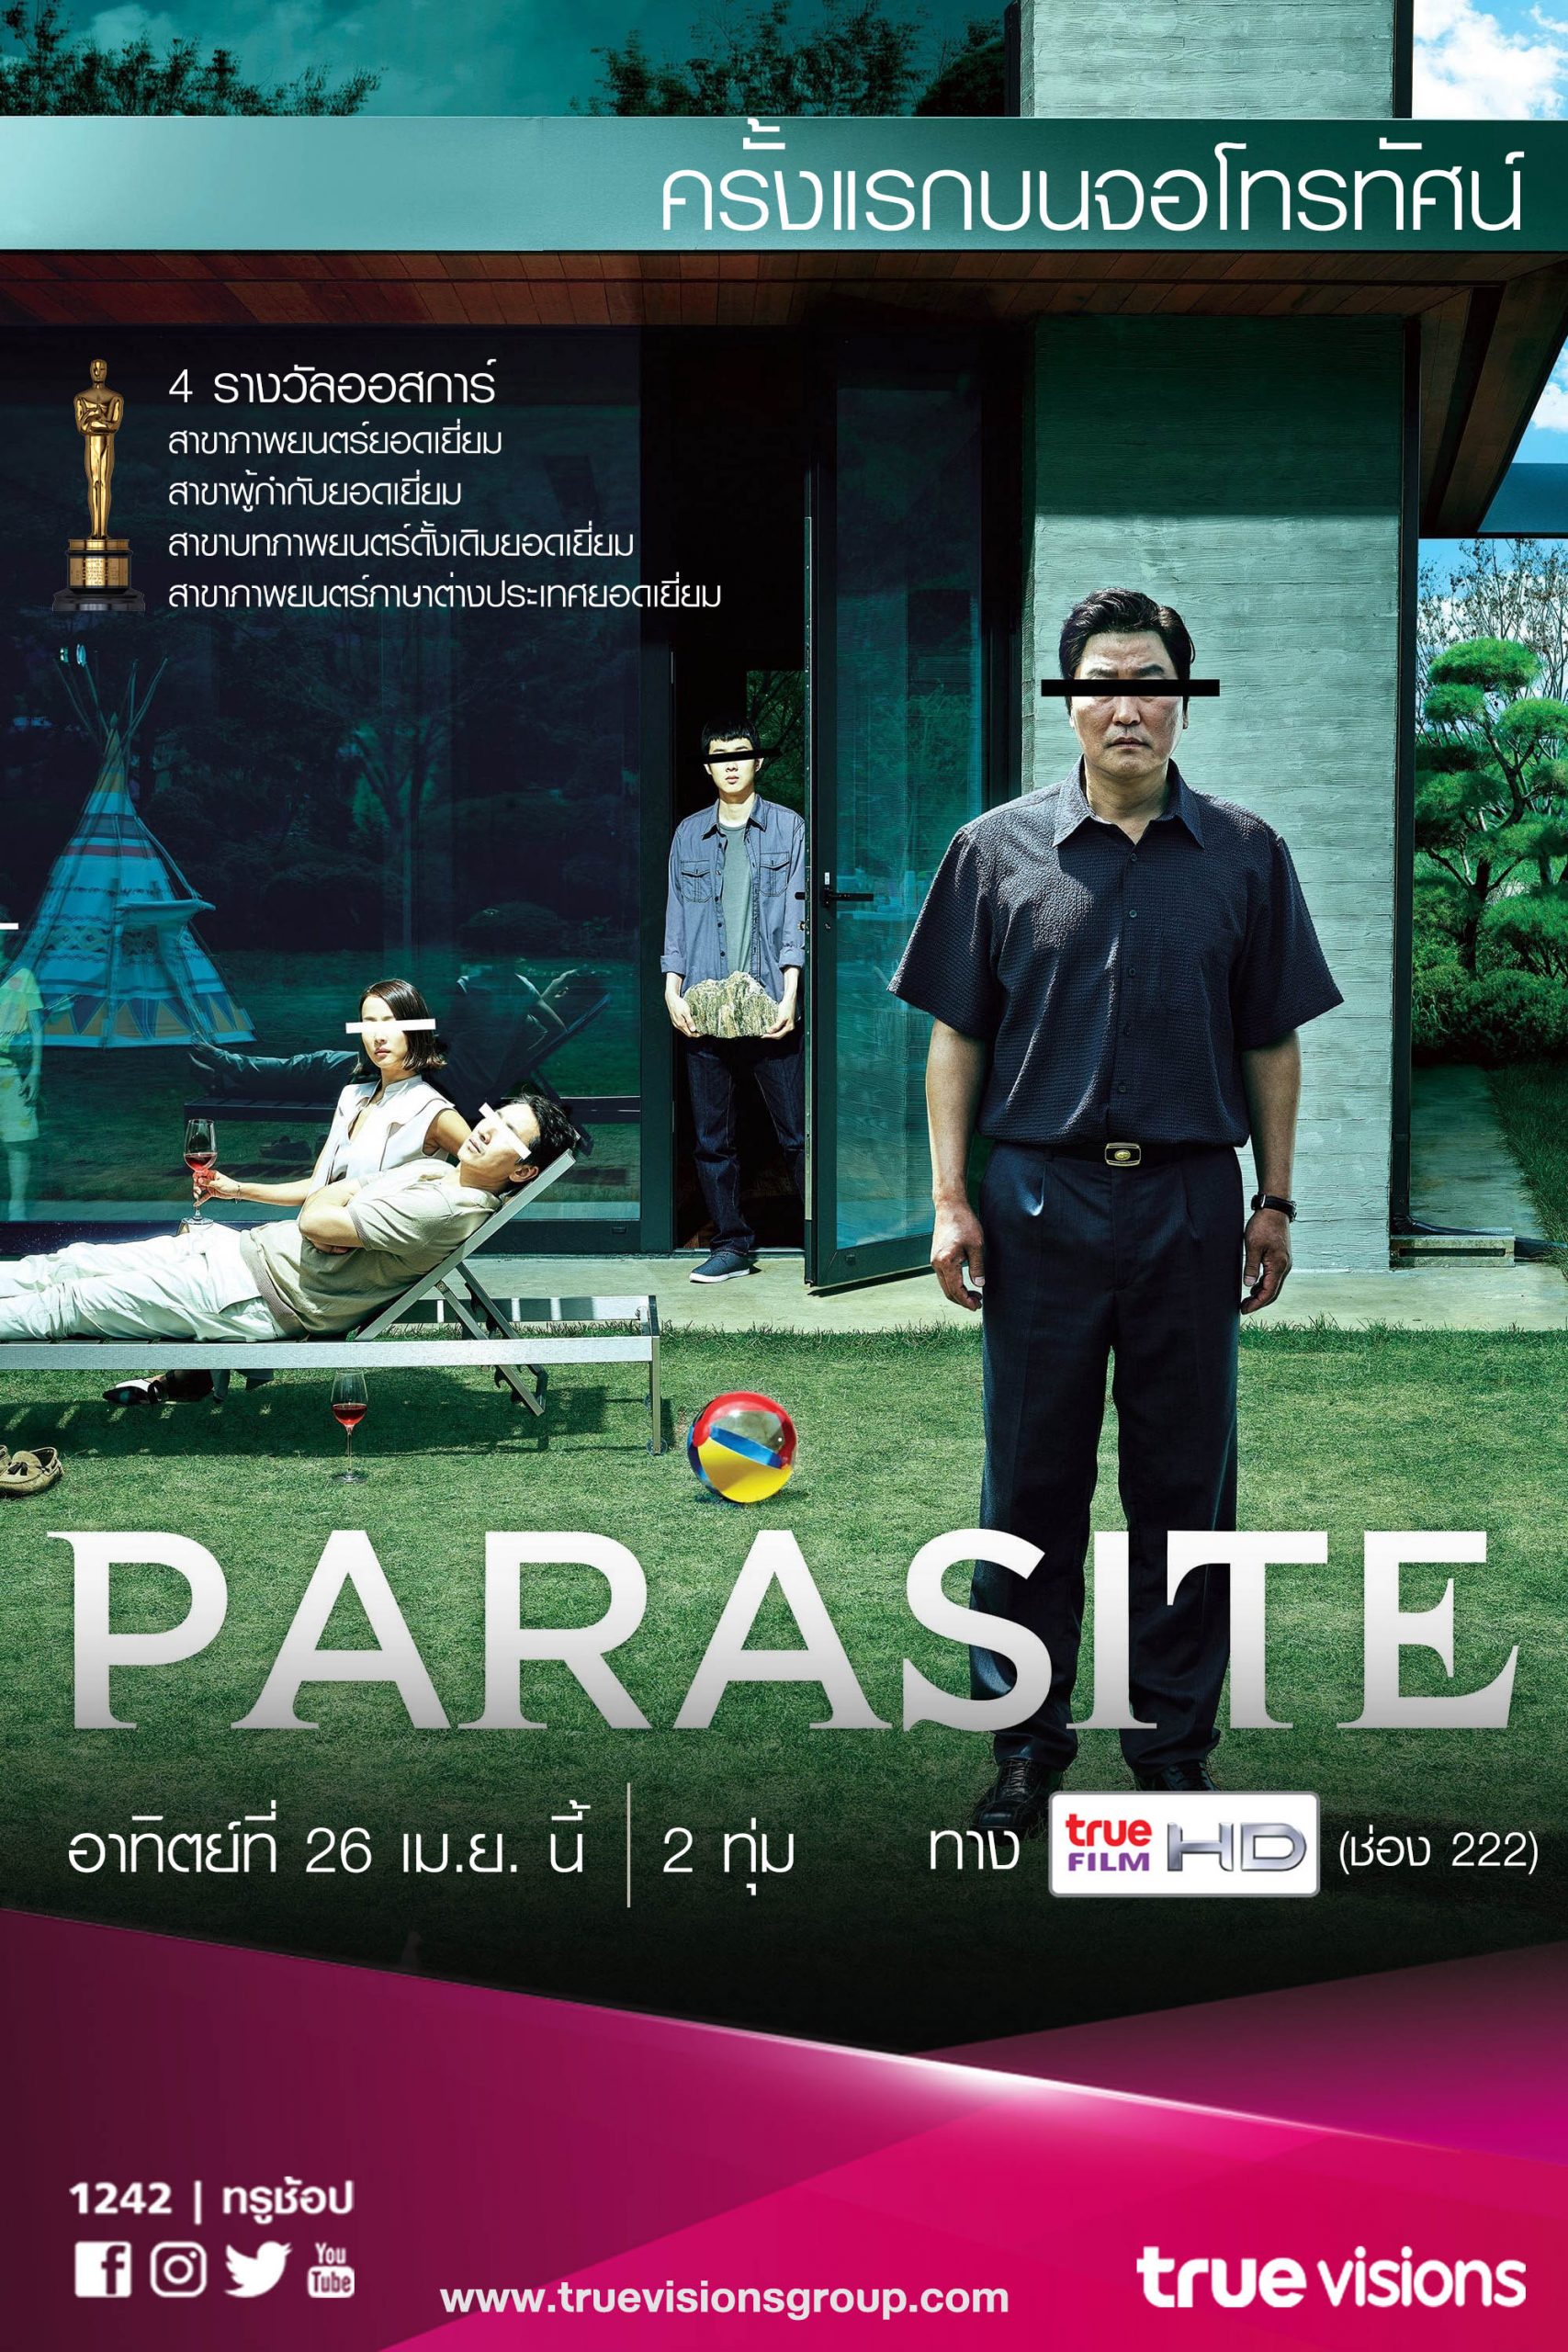 Parasite ภาพยนตร์ 4 รางวัลออสการ์ ออกอากาศครั้งแรกบนหน้าจอโทรทัศน์